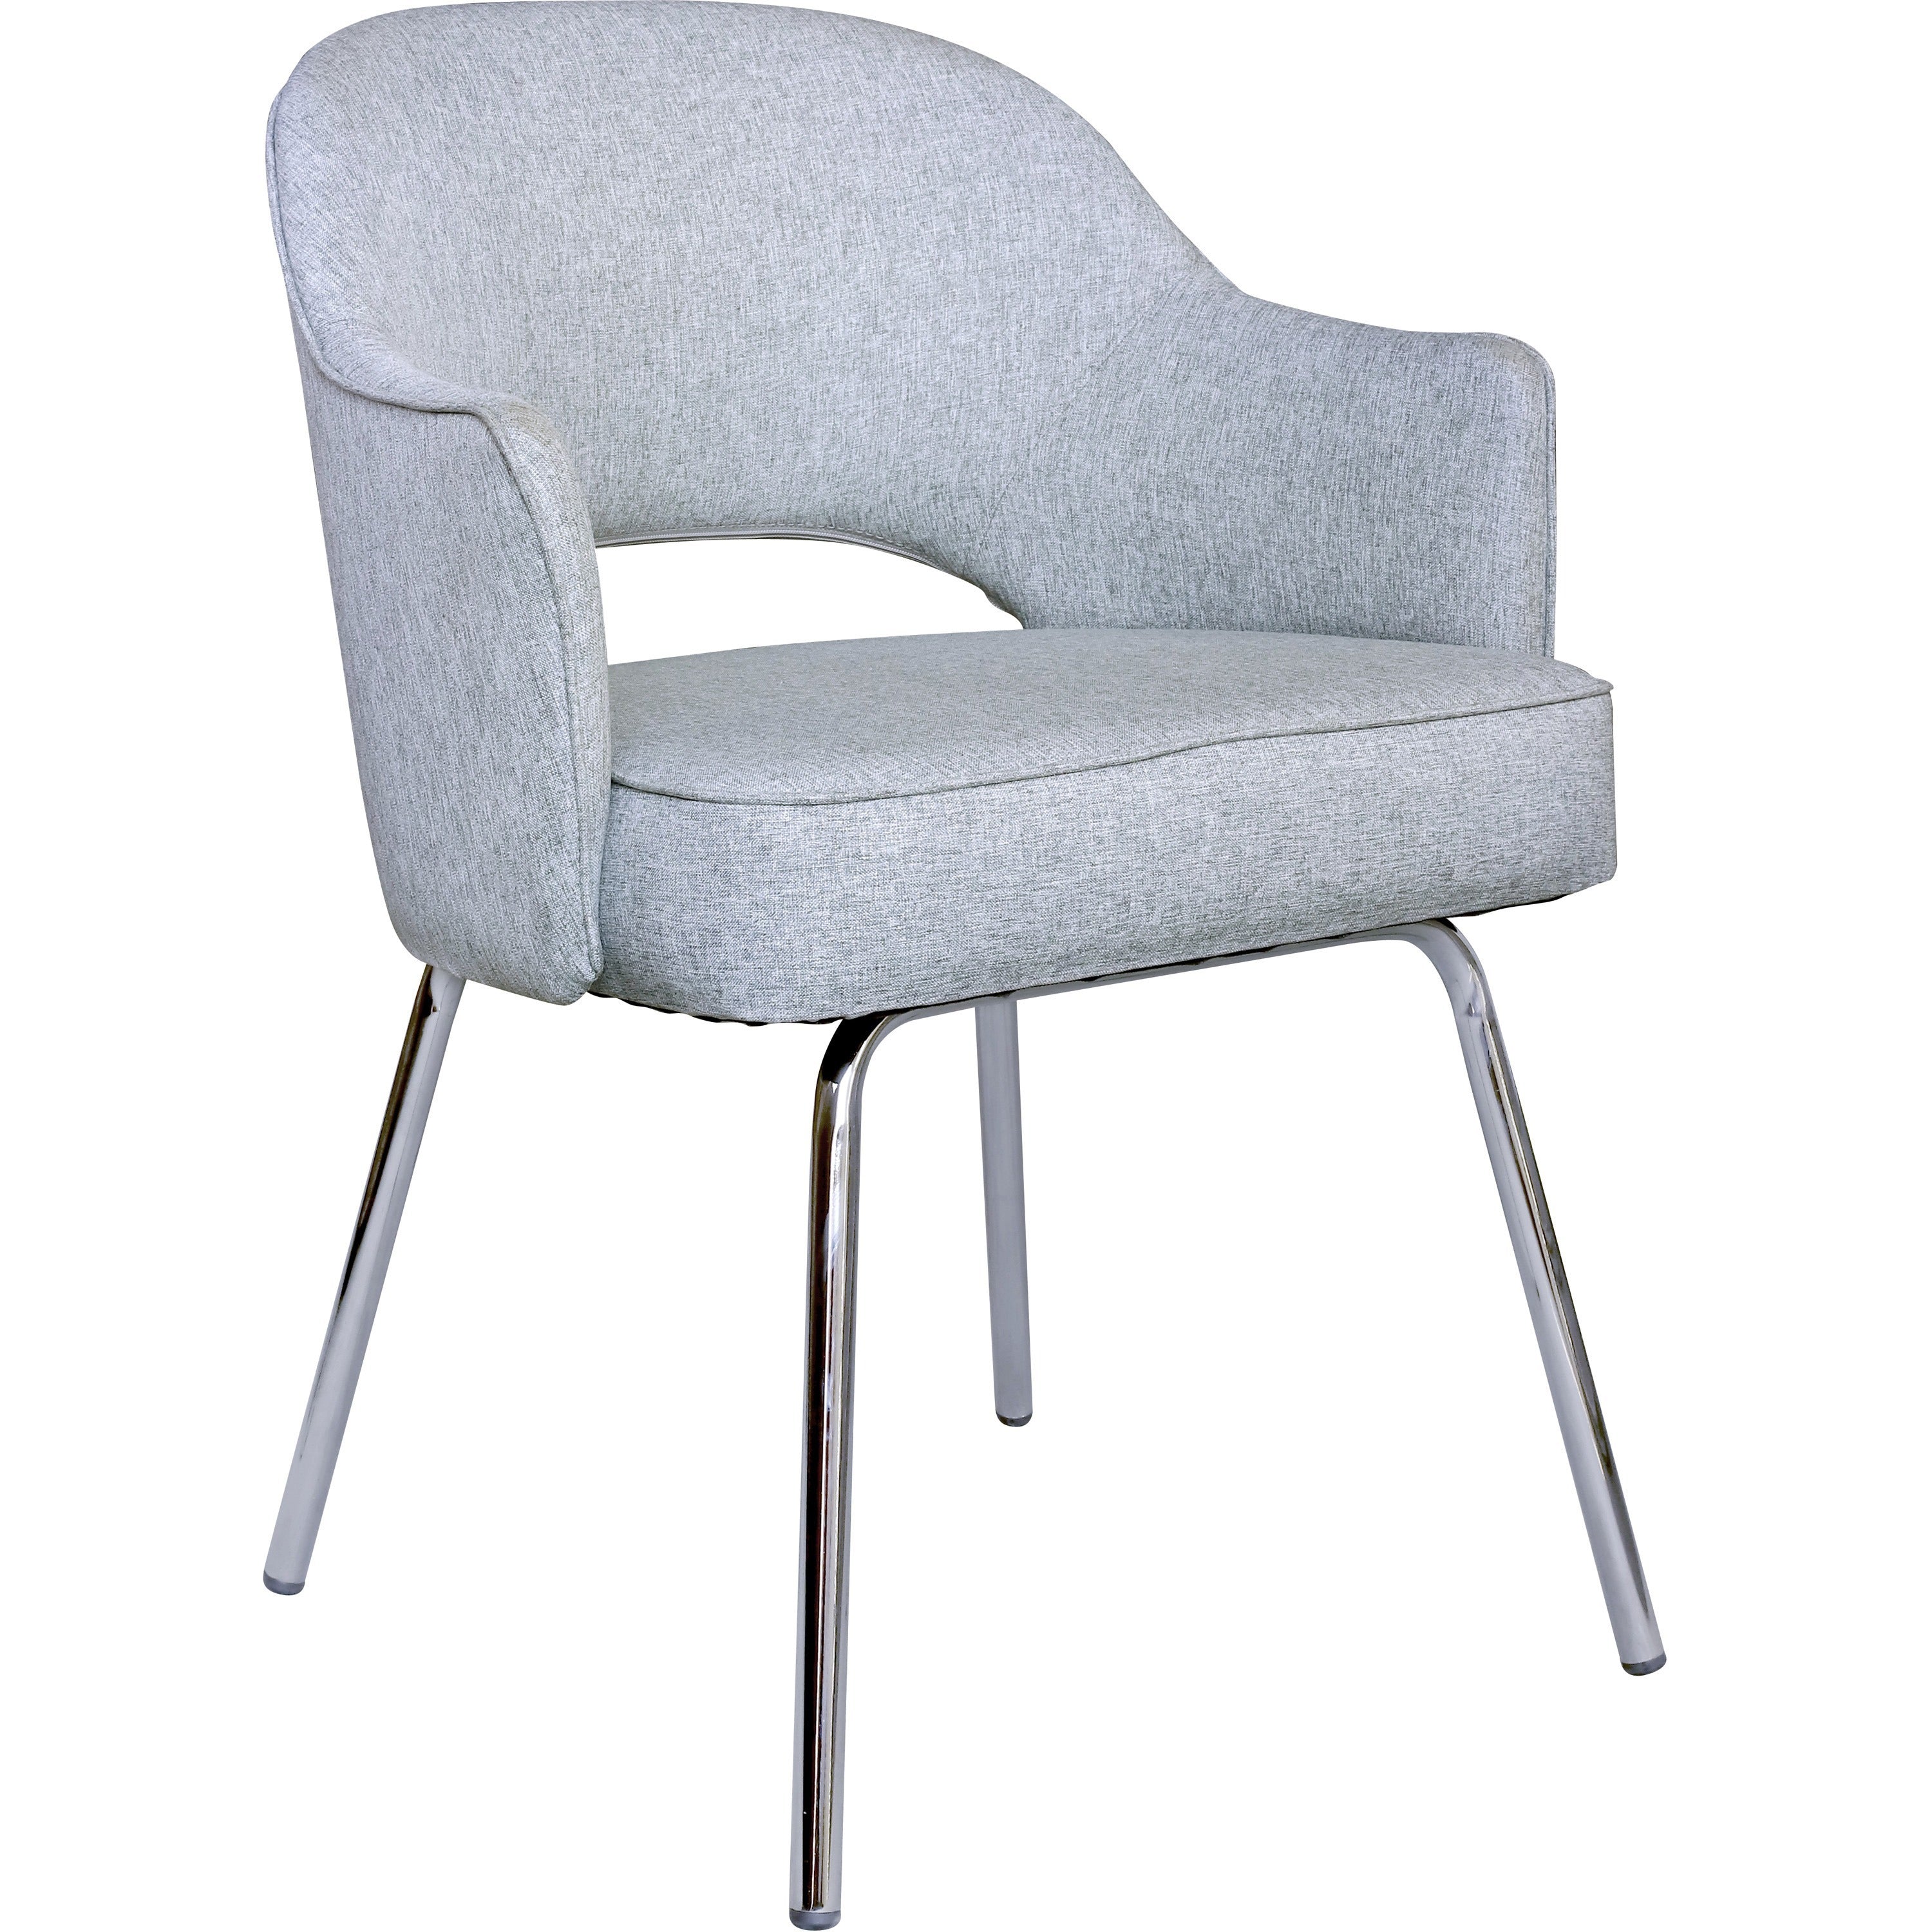 boss-granite-linen-guest-chair-granite-linen-seat-granite-linen-back-chrome-frame-four-legged-base-1-each_bopb489cgr - 1